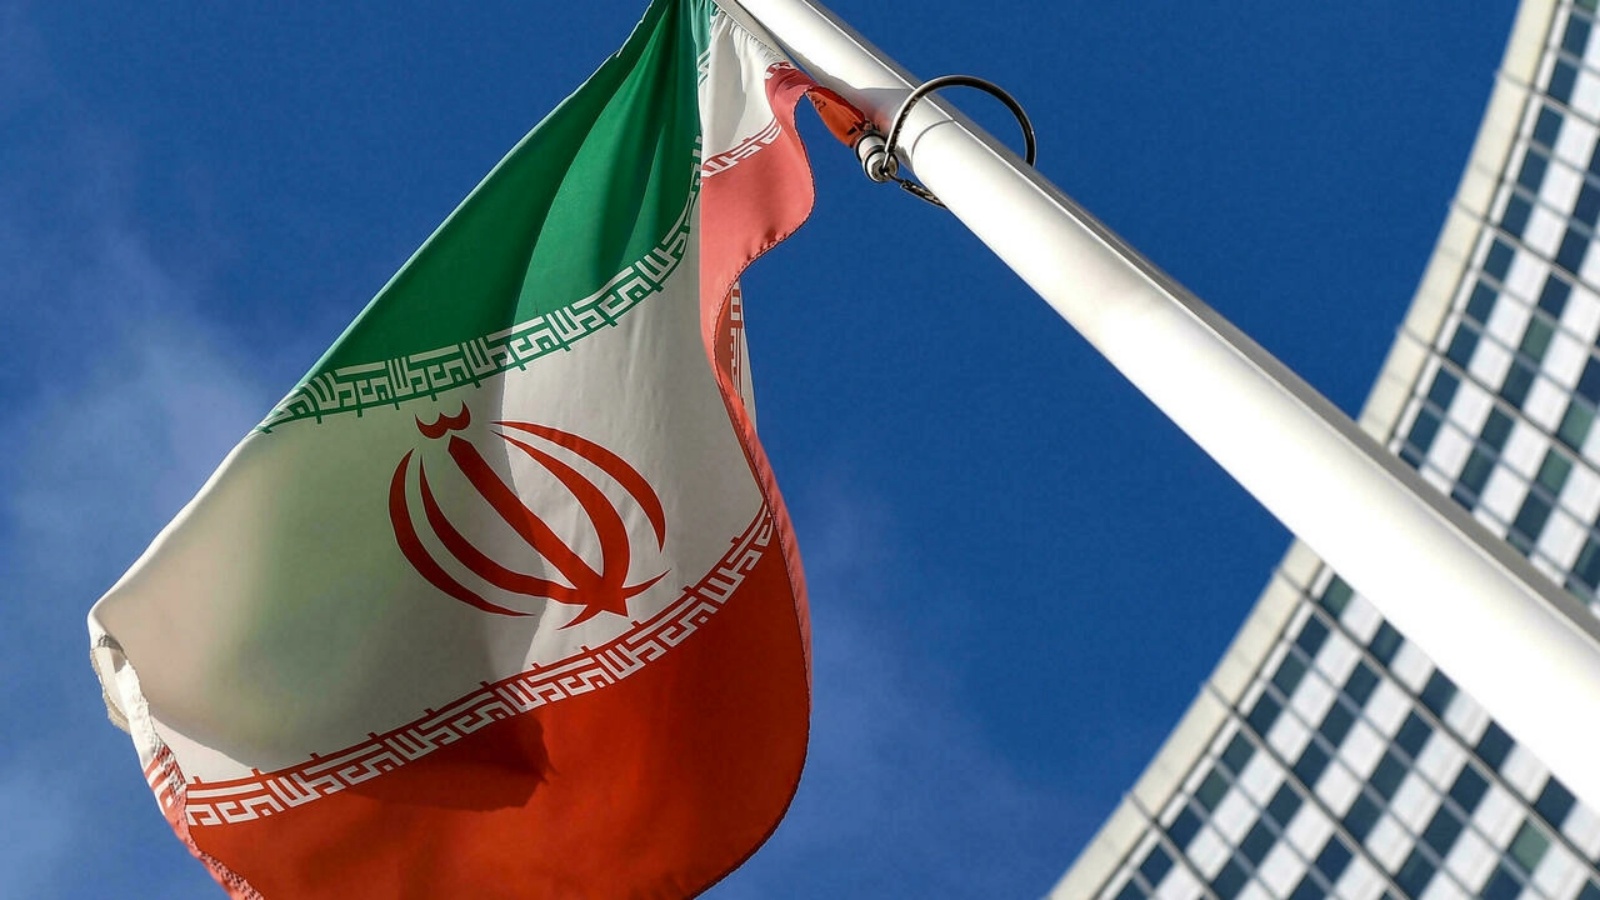 وزارة الأمن (الاستخبارات) الإيرانية تعلن توقيف عناصر من شبكة مرتبطة بجهاز الاستخبارات الاسرائيلي (الموساد)